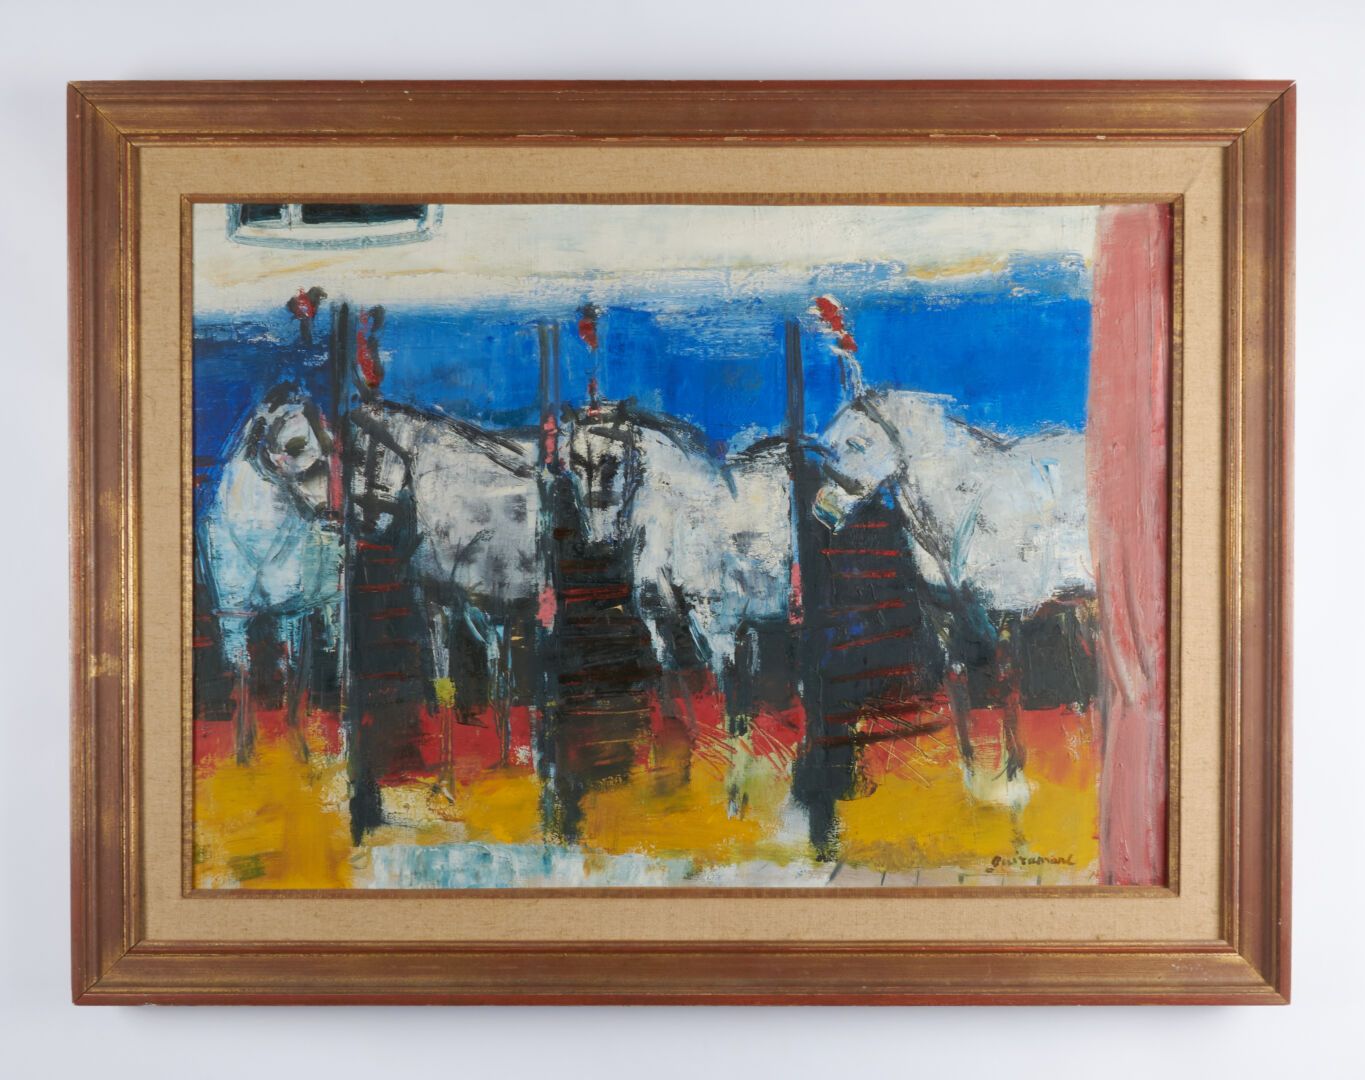 Null 吉拉曼-保罗(1926-2007)

"布面油画，左下角有签名 - 46x65